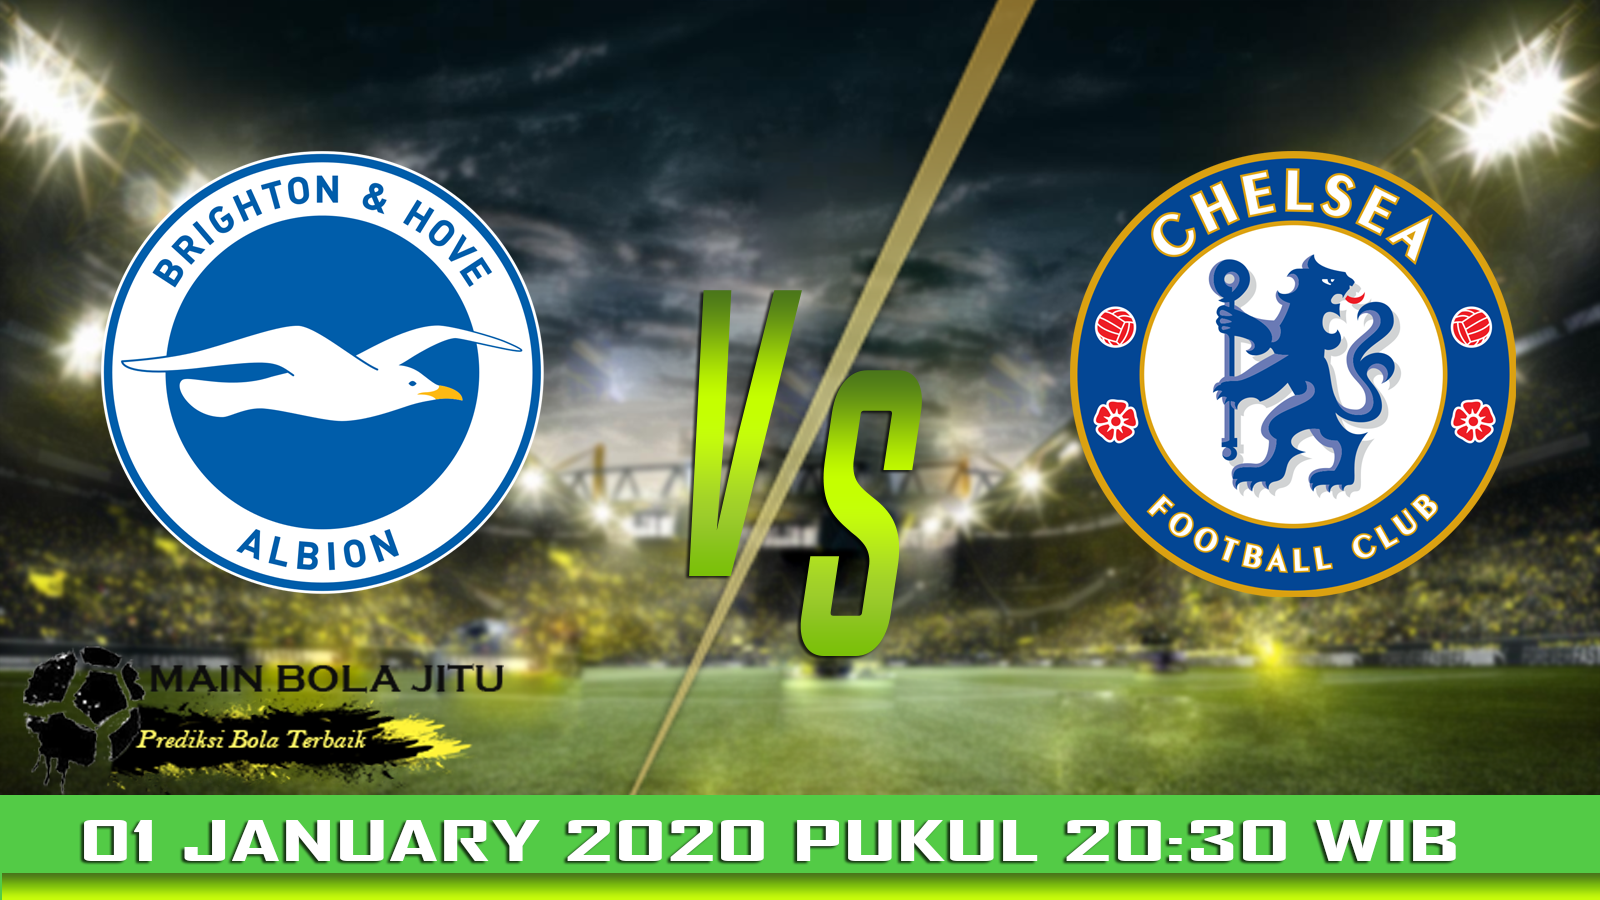 Prediksi Bola Brighton vs Chelsea tanggal 01-01-2020